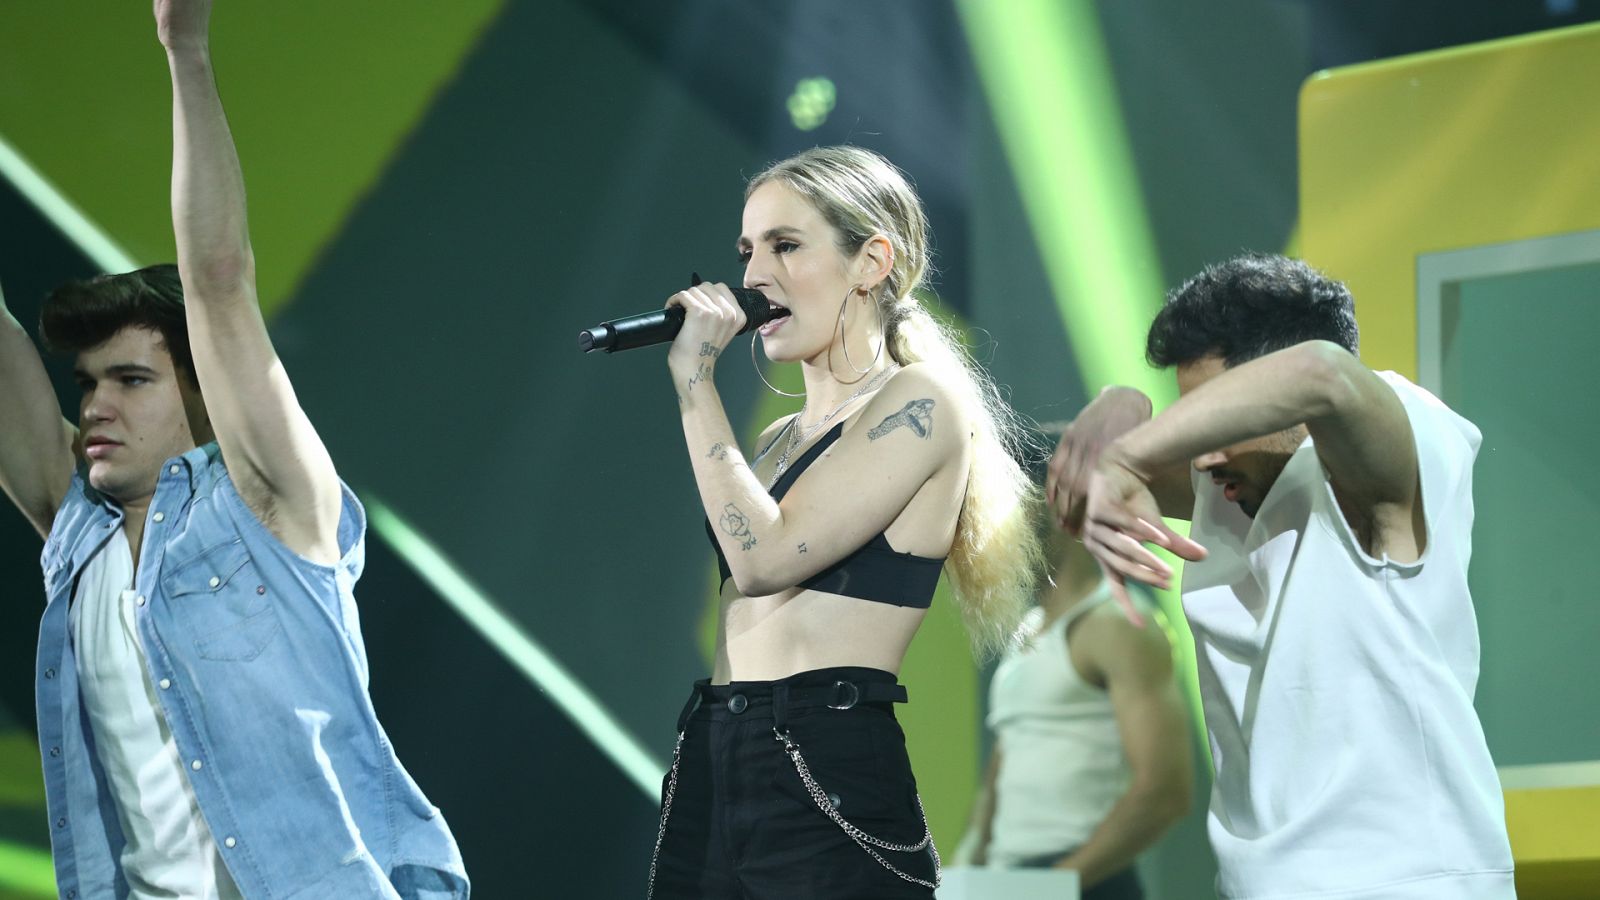 OT Eurovisión: María canta "Muérdeme"